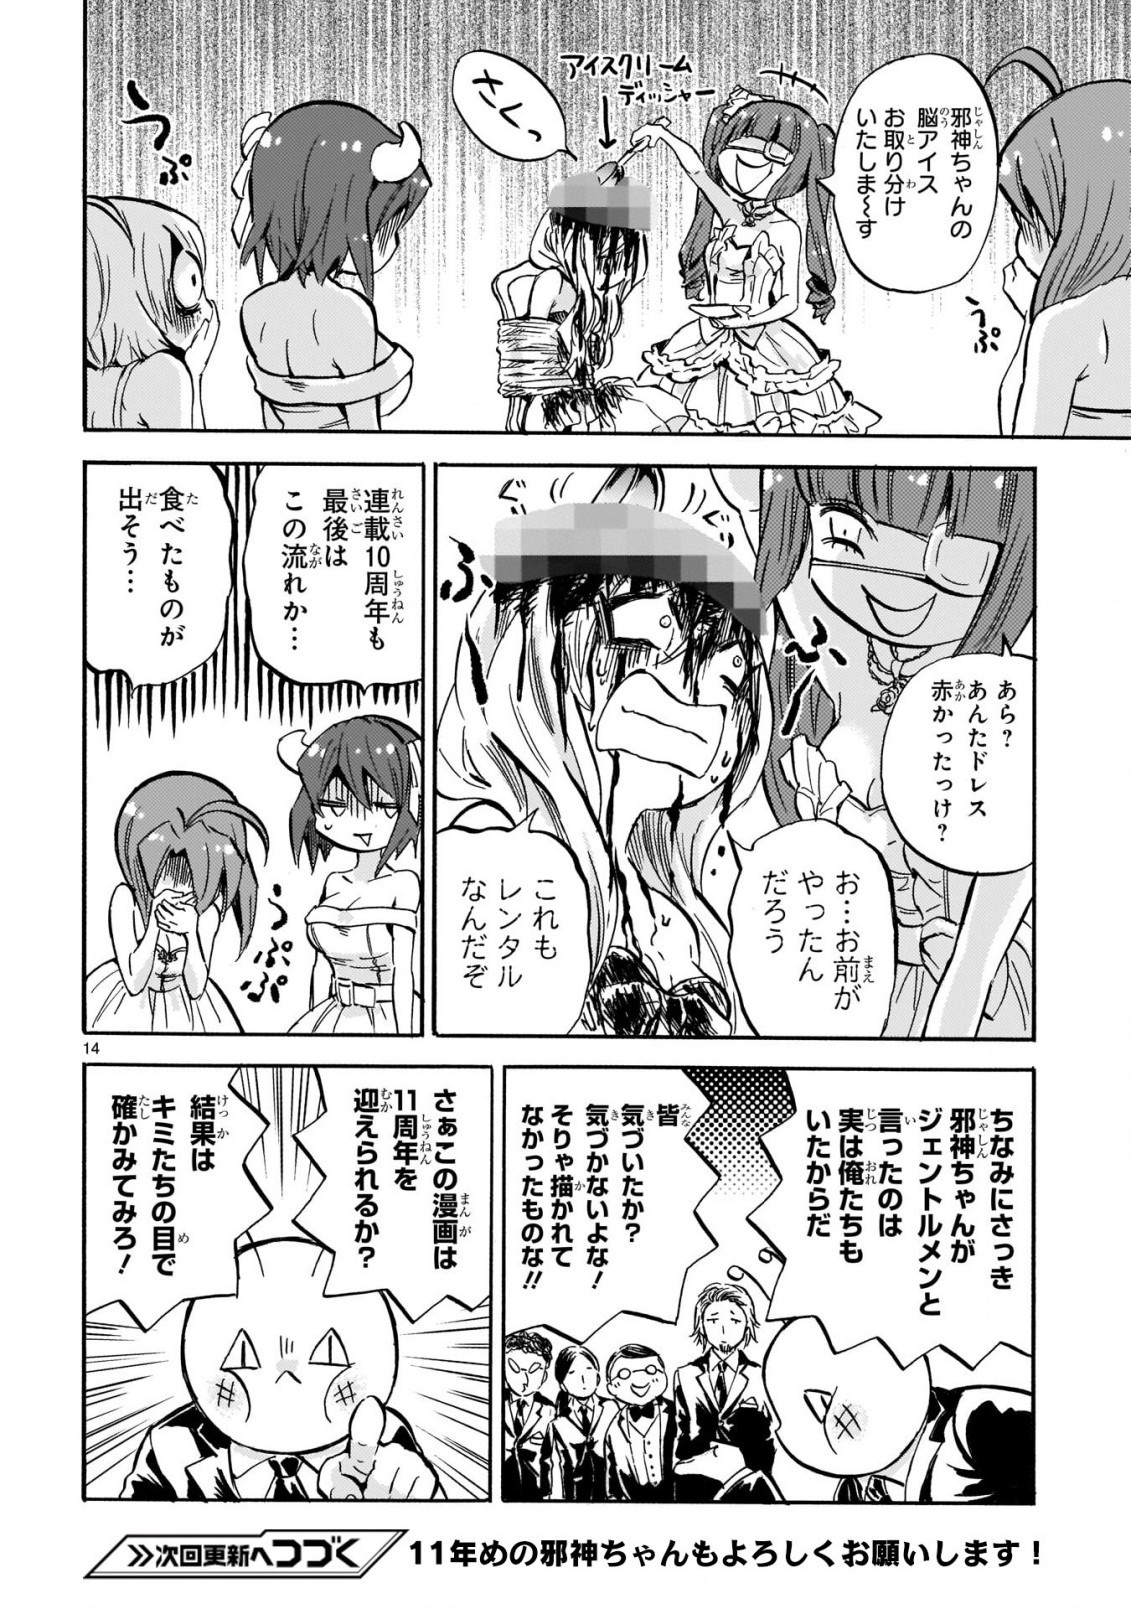 Jashin-chan Dropkick - Chapter 212 - Page 15